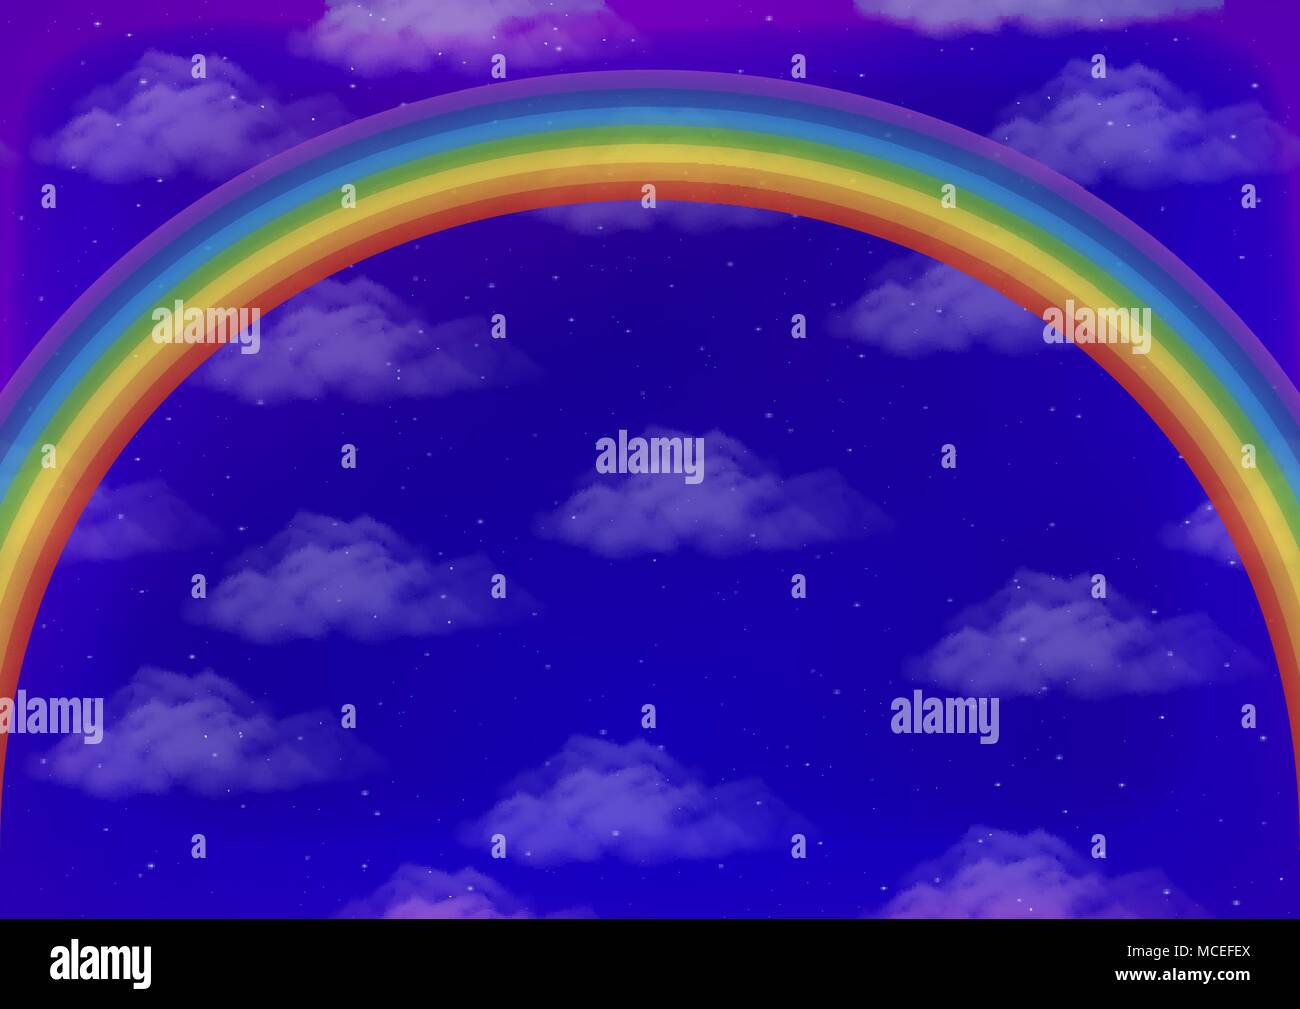 Paesaggio con sfondo luminoso arcobaleno colorato sul cielo blu con nuvole bianche e stelle. Eps10, contiene i lucidi. Vettore Illustrazione Vettoriale